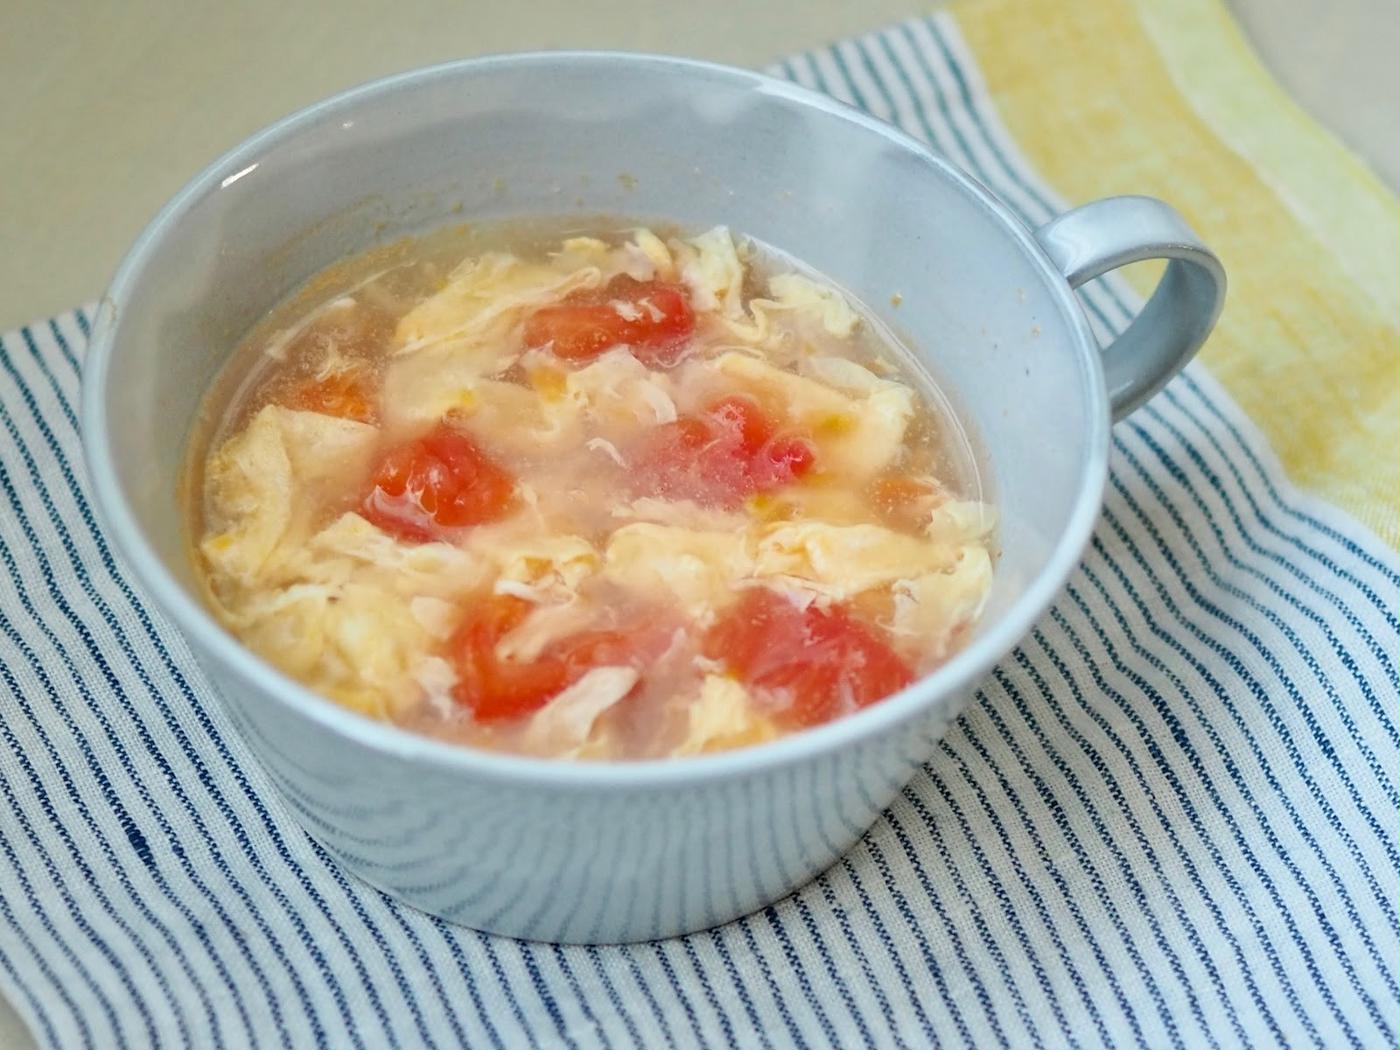 トマトは冷凍すると栄養価キープ 時短に おいしさ保つ冷凍方法を解説 トクバイニュース